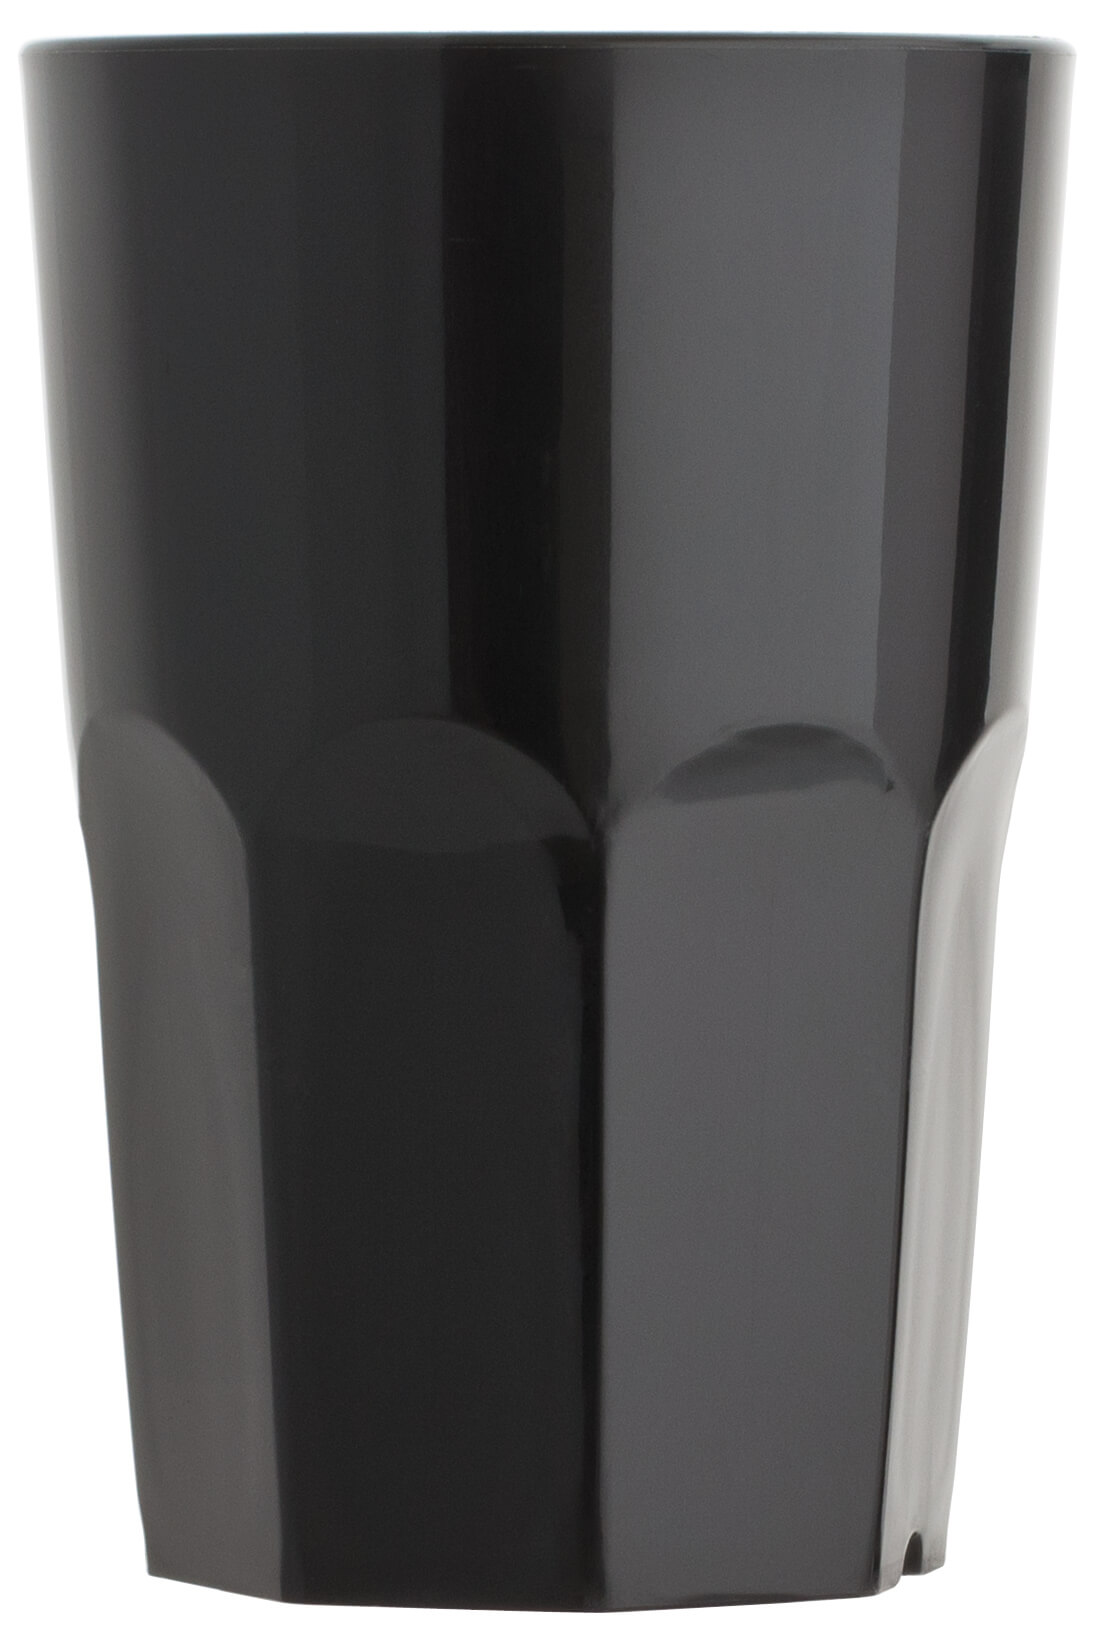 Kunststoffbecher PP Granity schwarz - 400ml